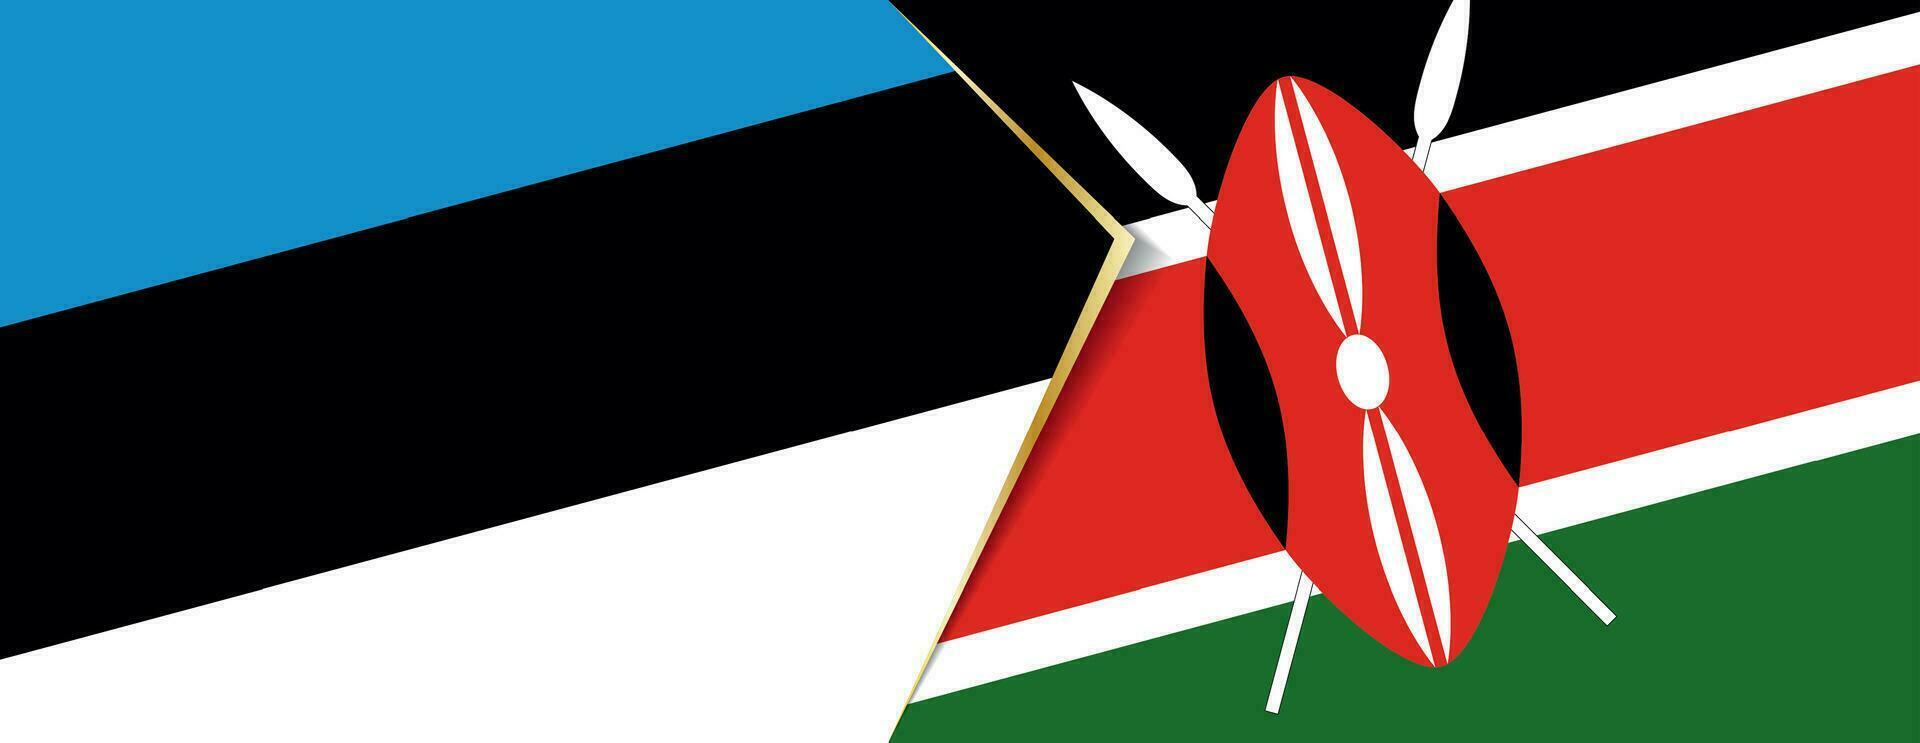 Estonia e Kenia bandiere, Due vettore bandiere.